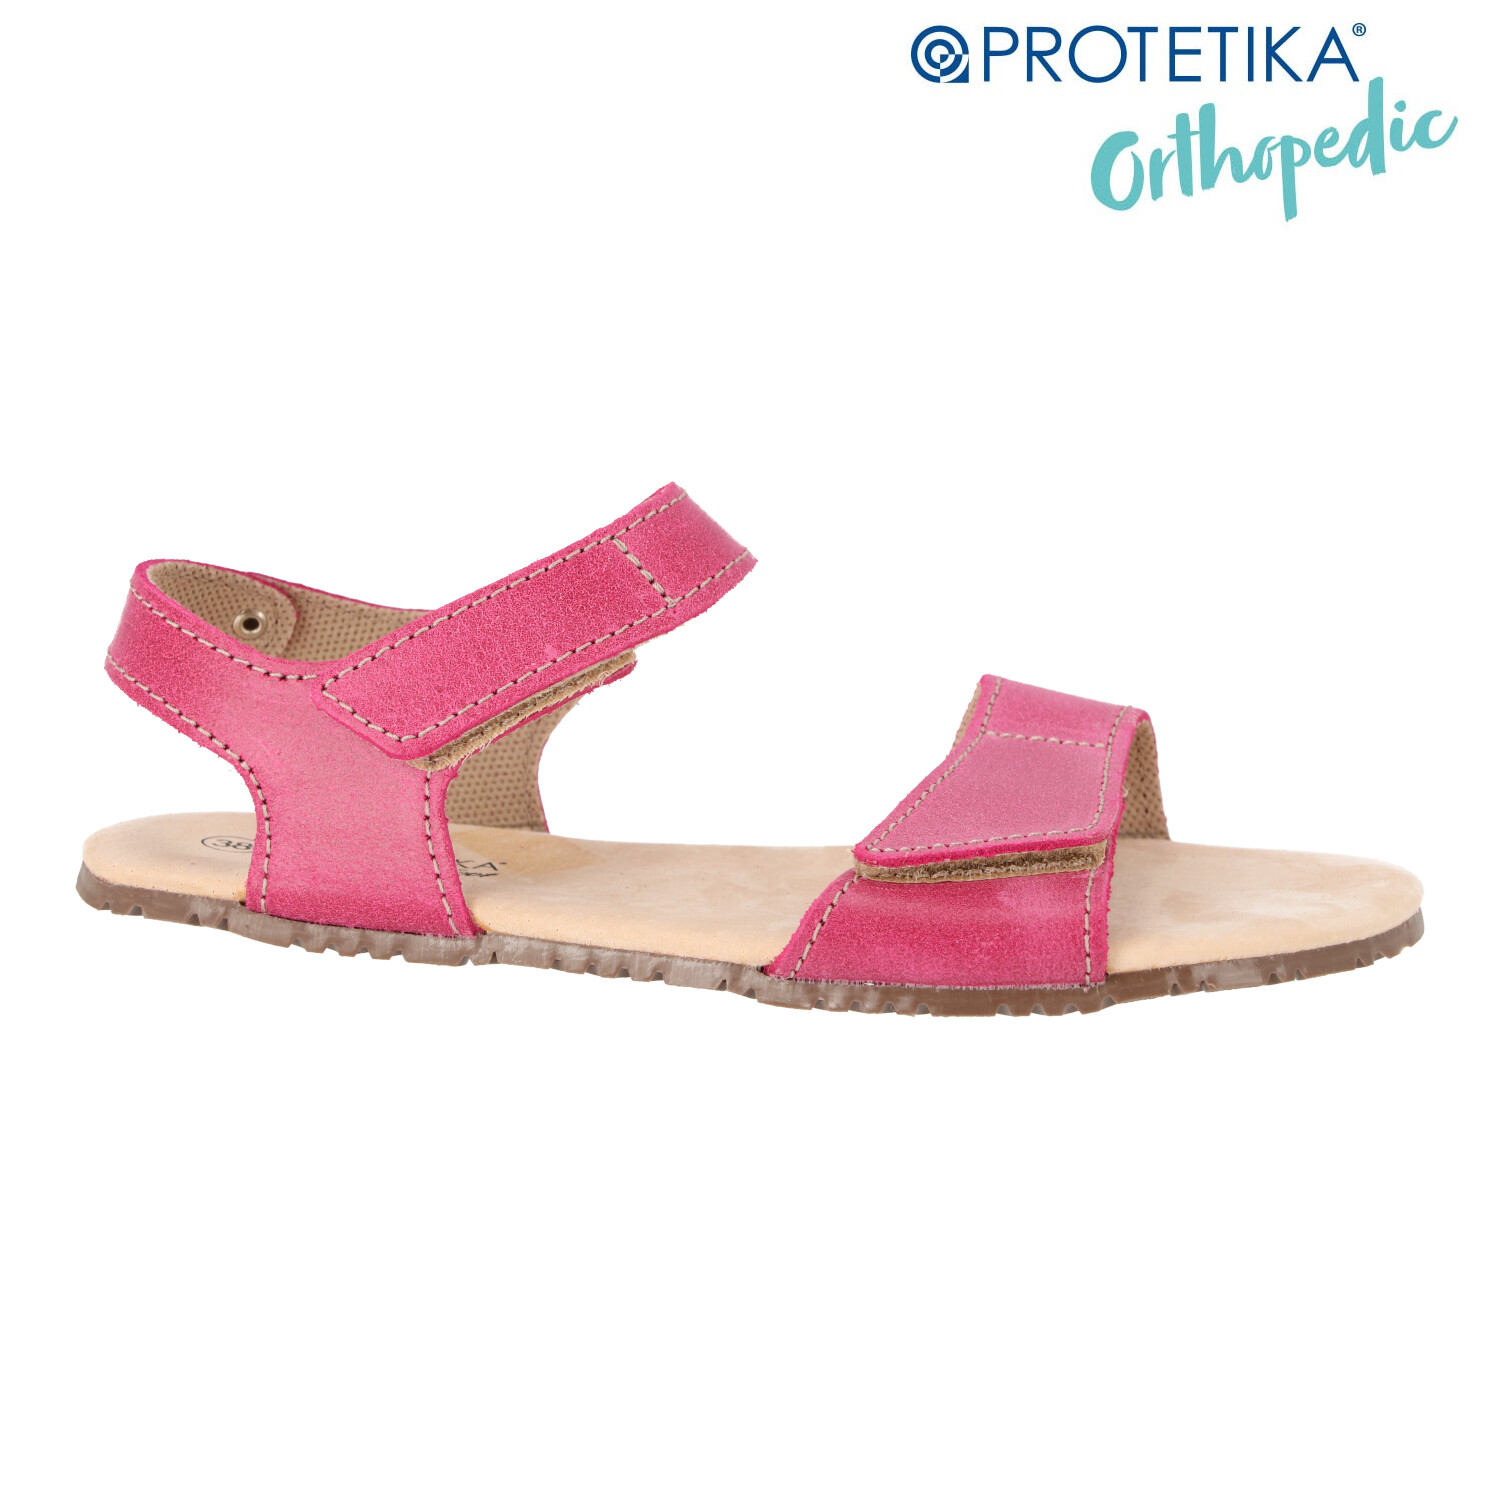 Protetika - t 201 BELITA ružová - dámska barefootová obuv